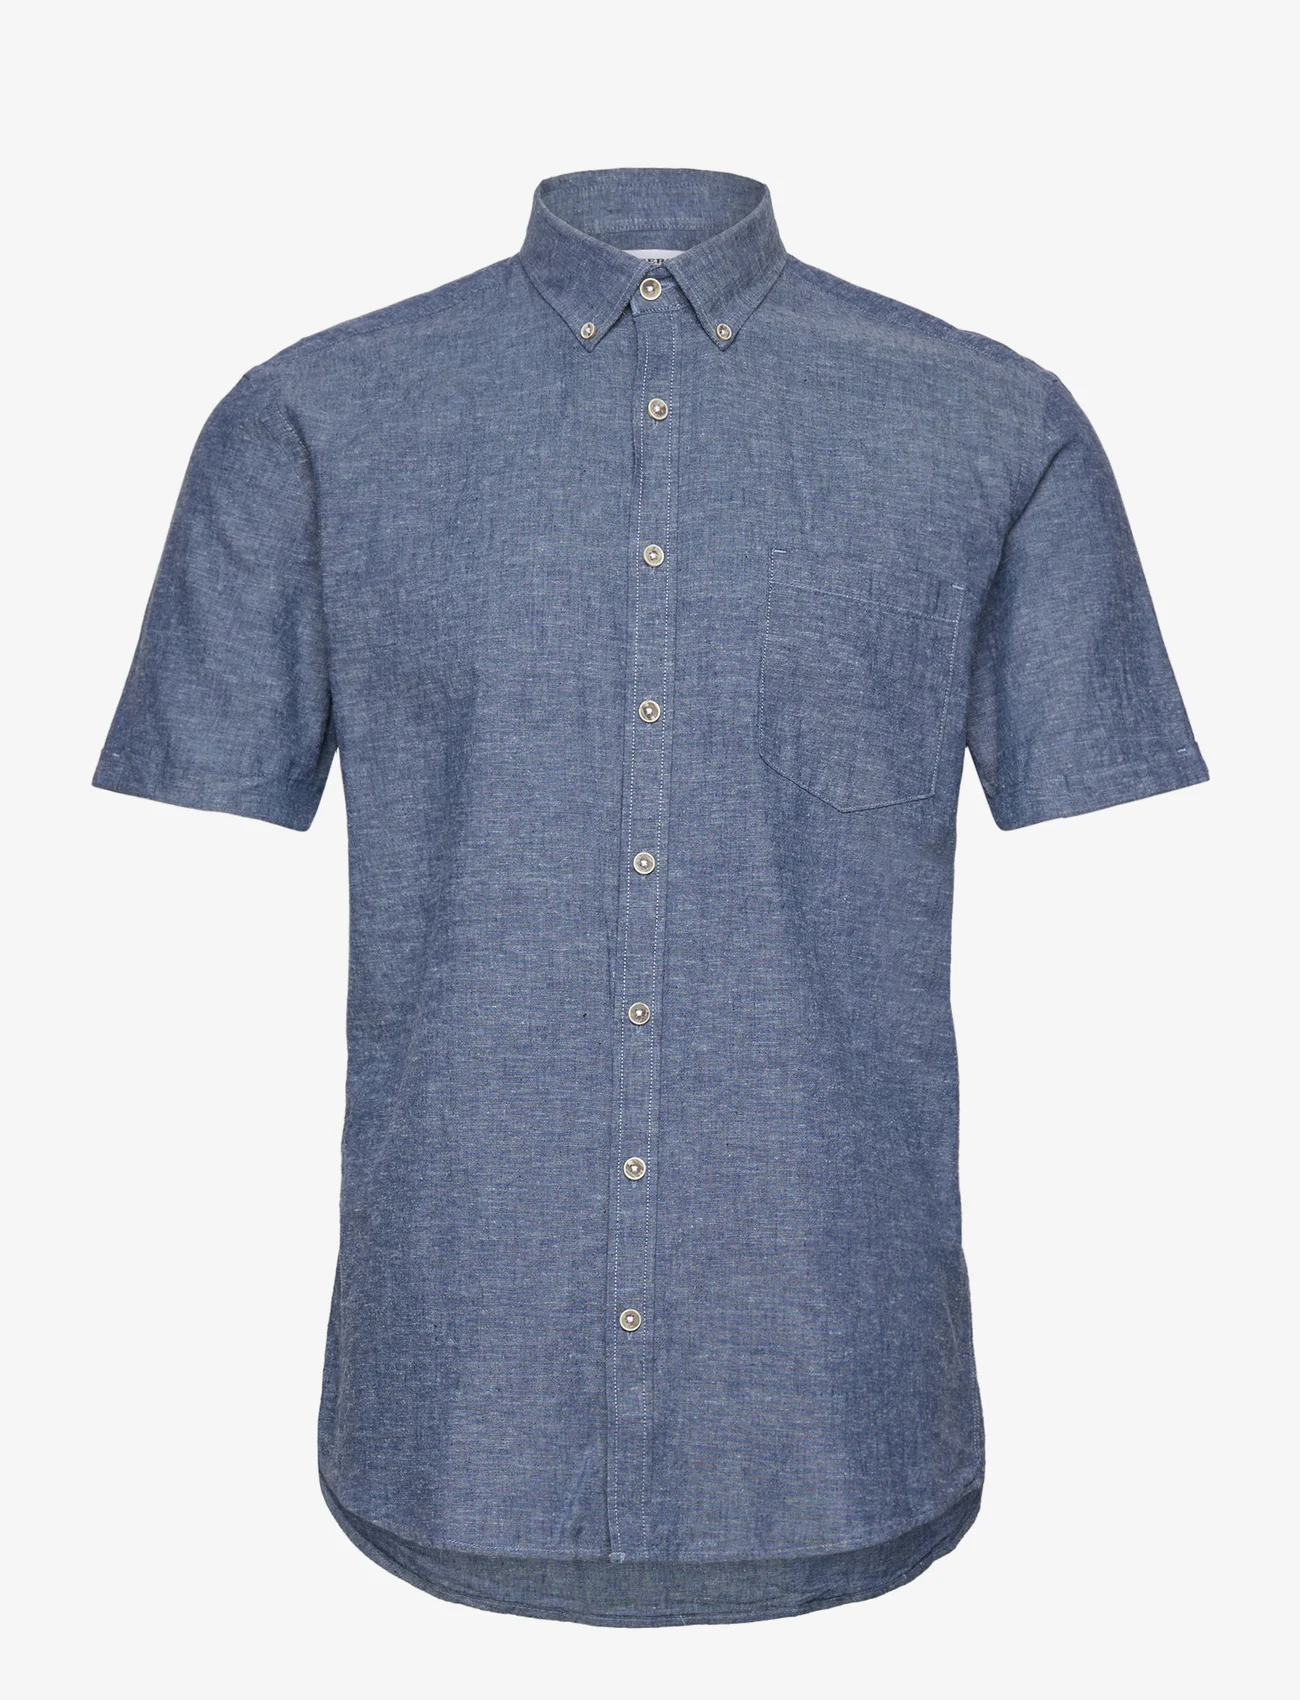 Lindbergh - Cotton/linen shirt S/S - linen shirts - navy - 0